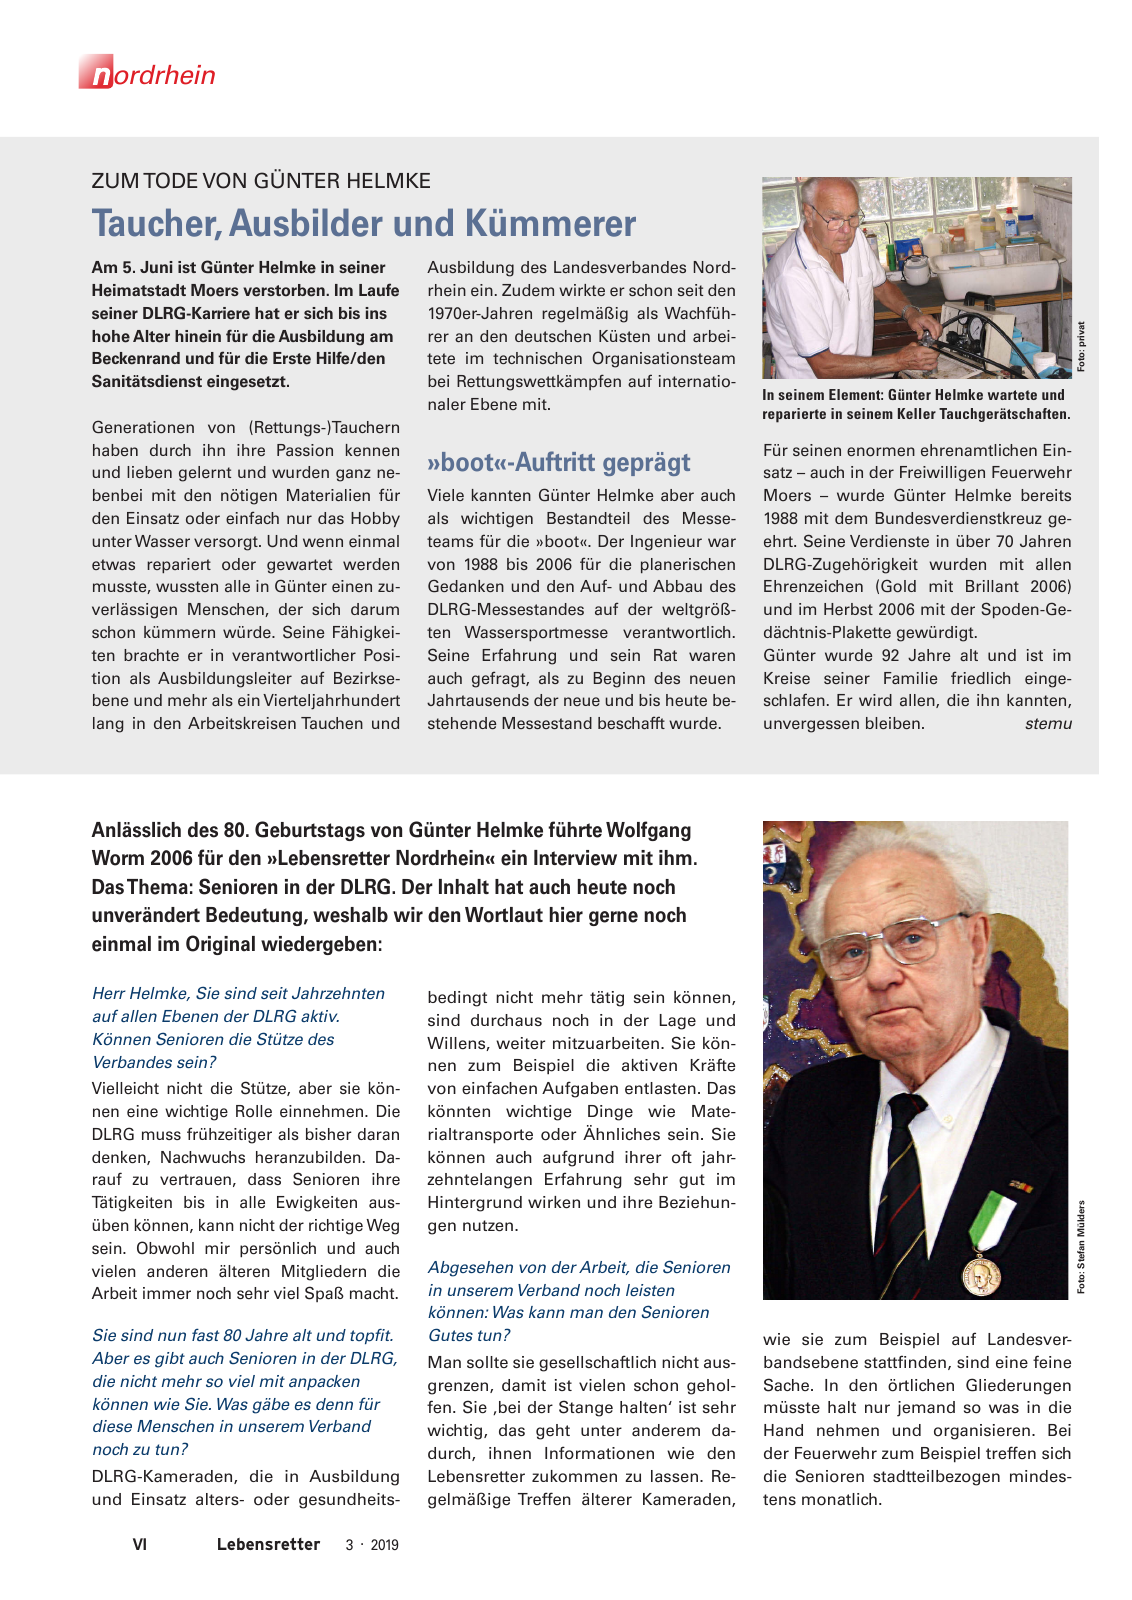 Vorschau Lebensretter 3/2019 - Nordrhein Regionalausgabe Seite 8